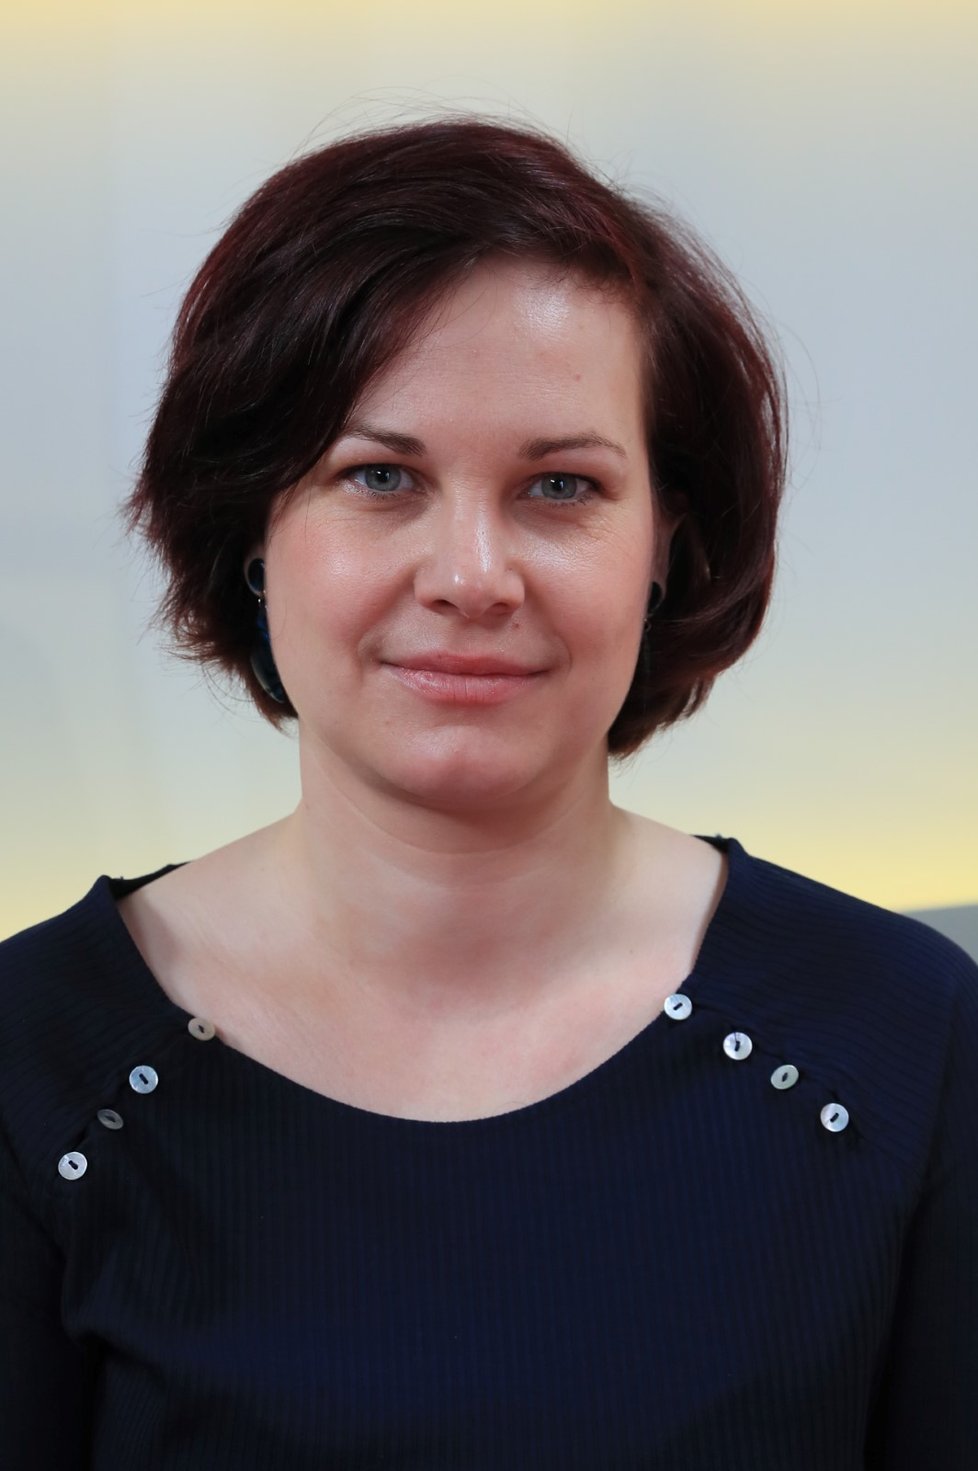 Hostem pořadu Blesk Podcast byla Kateřina Štajerová z Oddělení ekologie invazí na Botanickém ústavu AV ČR .